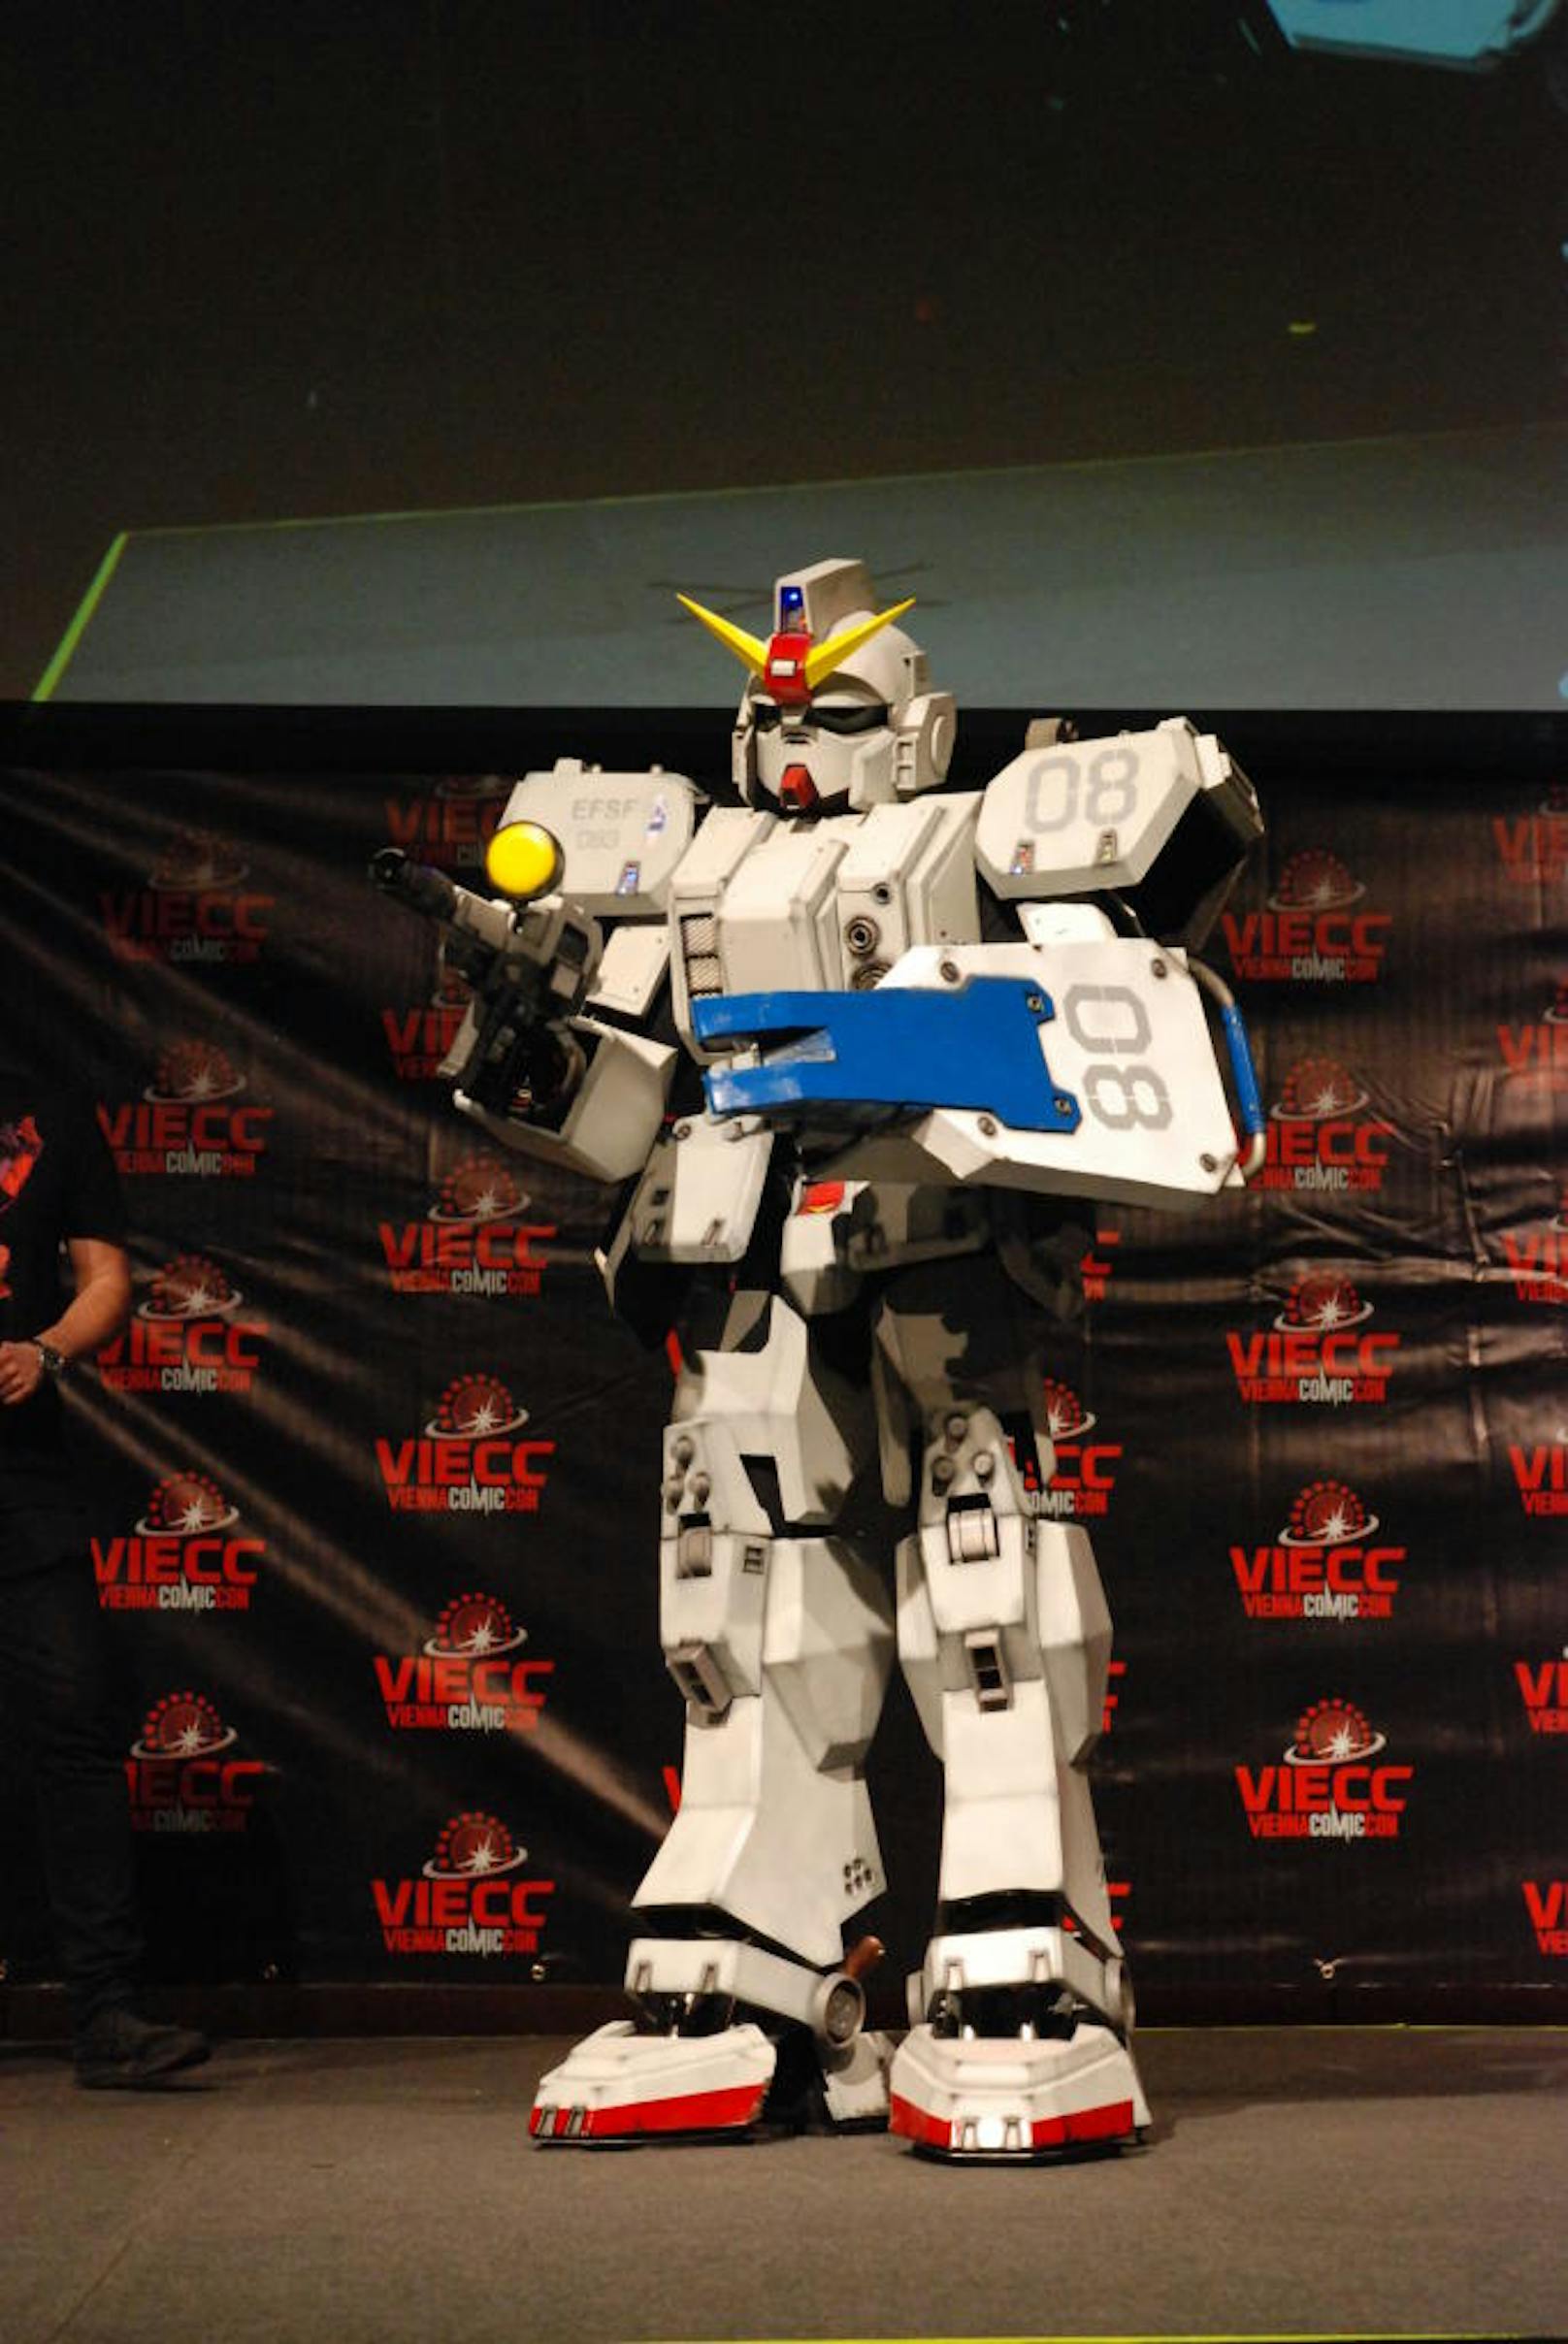 ... bei jeder Bewegung kamen neue Details zum Vorschein

Cosplayer Gundam RX 79
verkleidet als Gundam von Gundam MS08 Team
Kategorie Armor